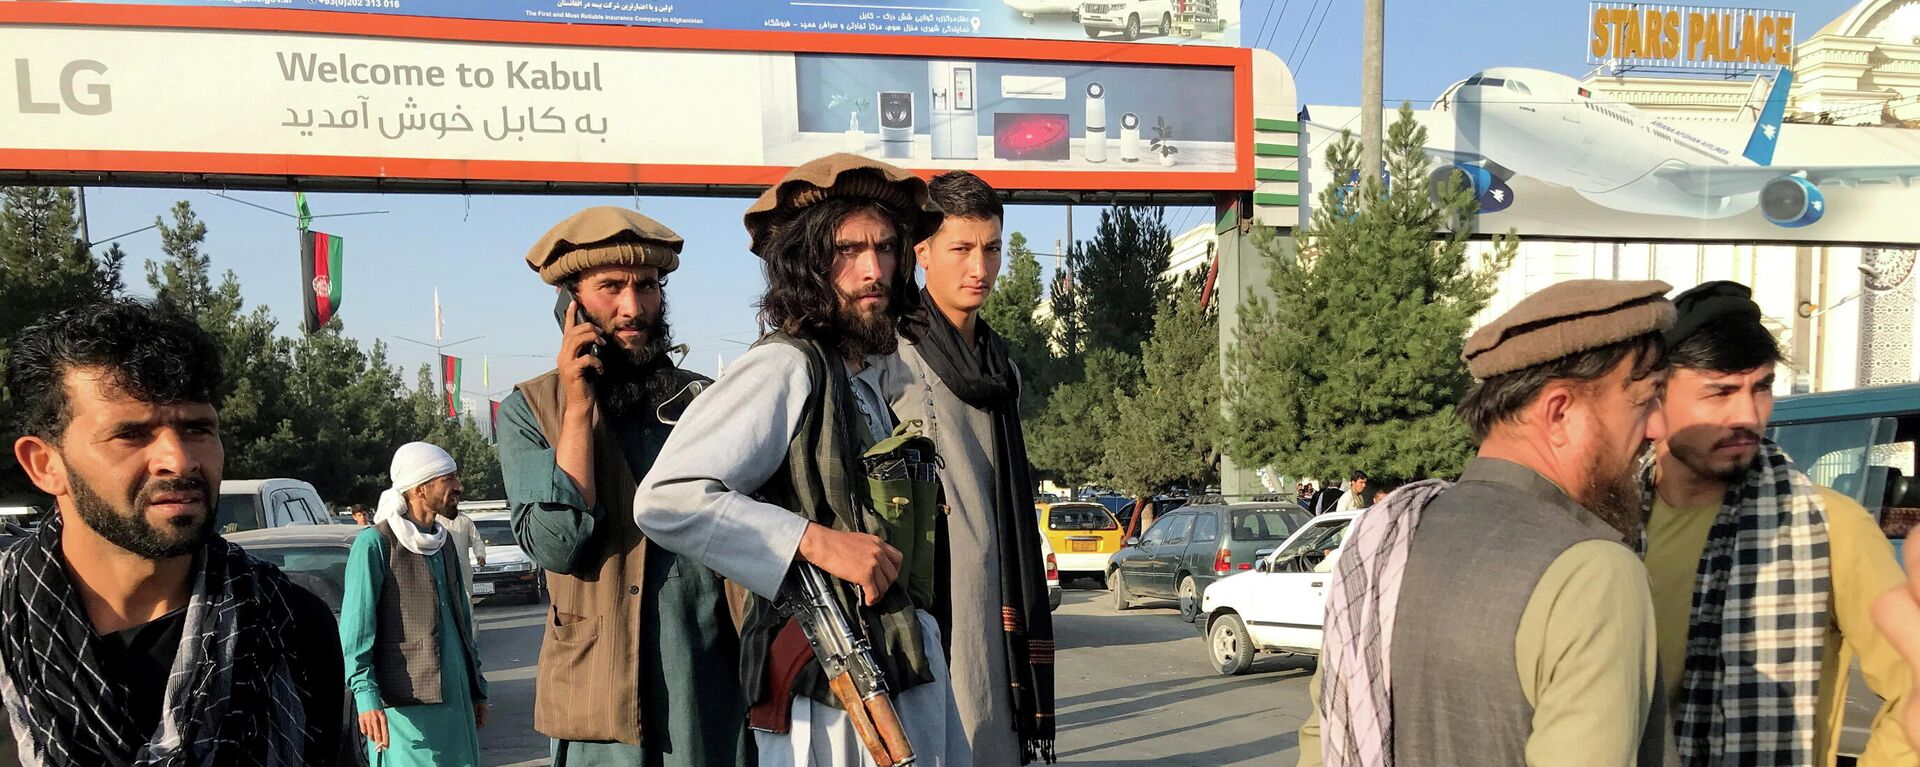 Боевики радикального движения Талибан стоят возле международного аэропорта в Кабуле - Sputnik Литва, 1920, 16.08.2021